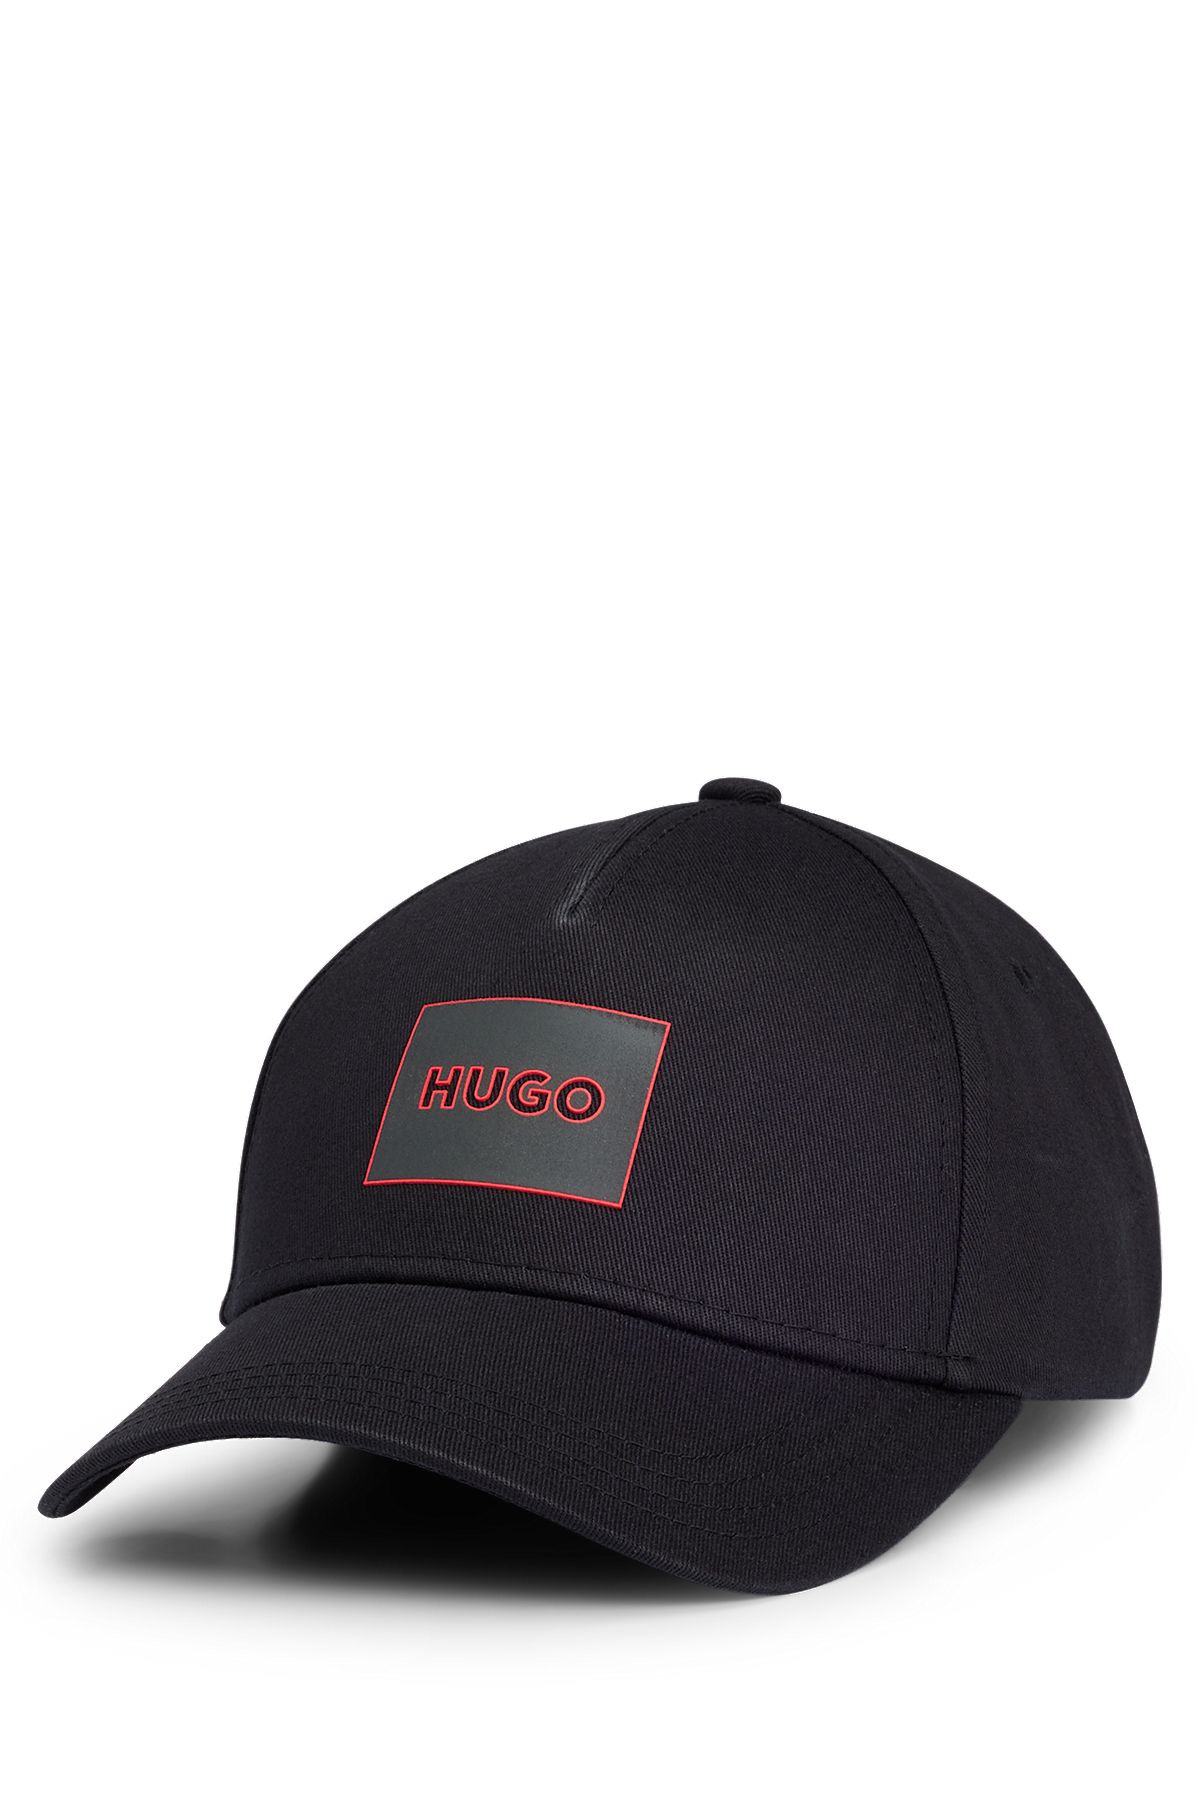 BOSS HUGO BOSS Logo Hats for Men